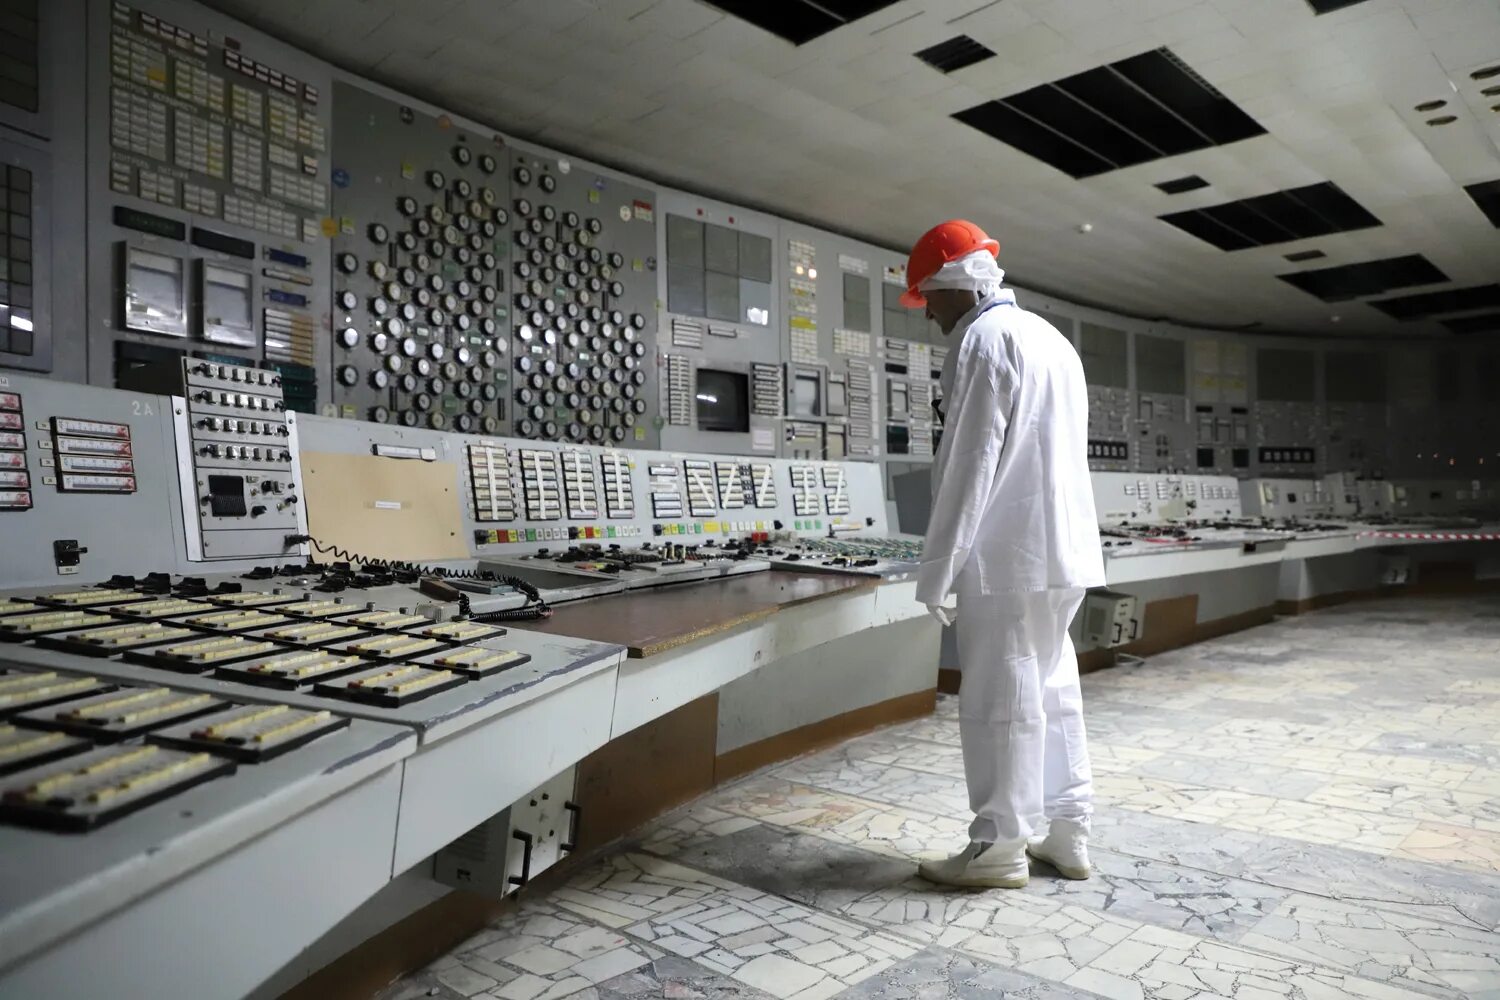 Чернобыльская аэс назначение. Реактор Чернобыльской АЭС. 4 Энергоблок ЧАЭС. АЭС Припять 4 энергоблок. Реактор 4 энергоблока ЧАЭС.